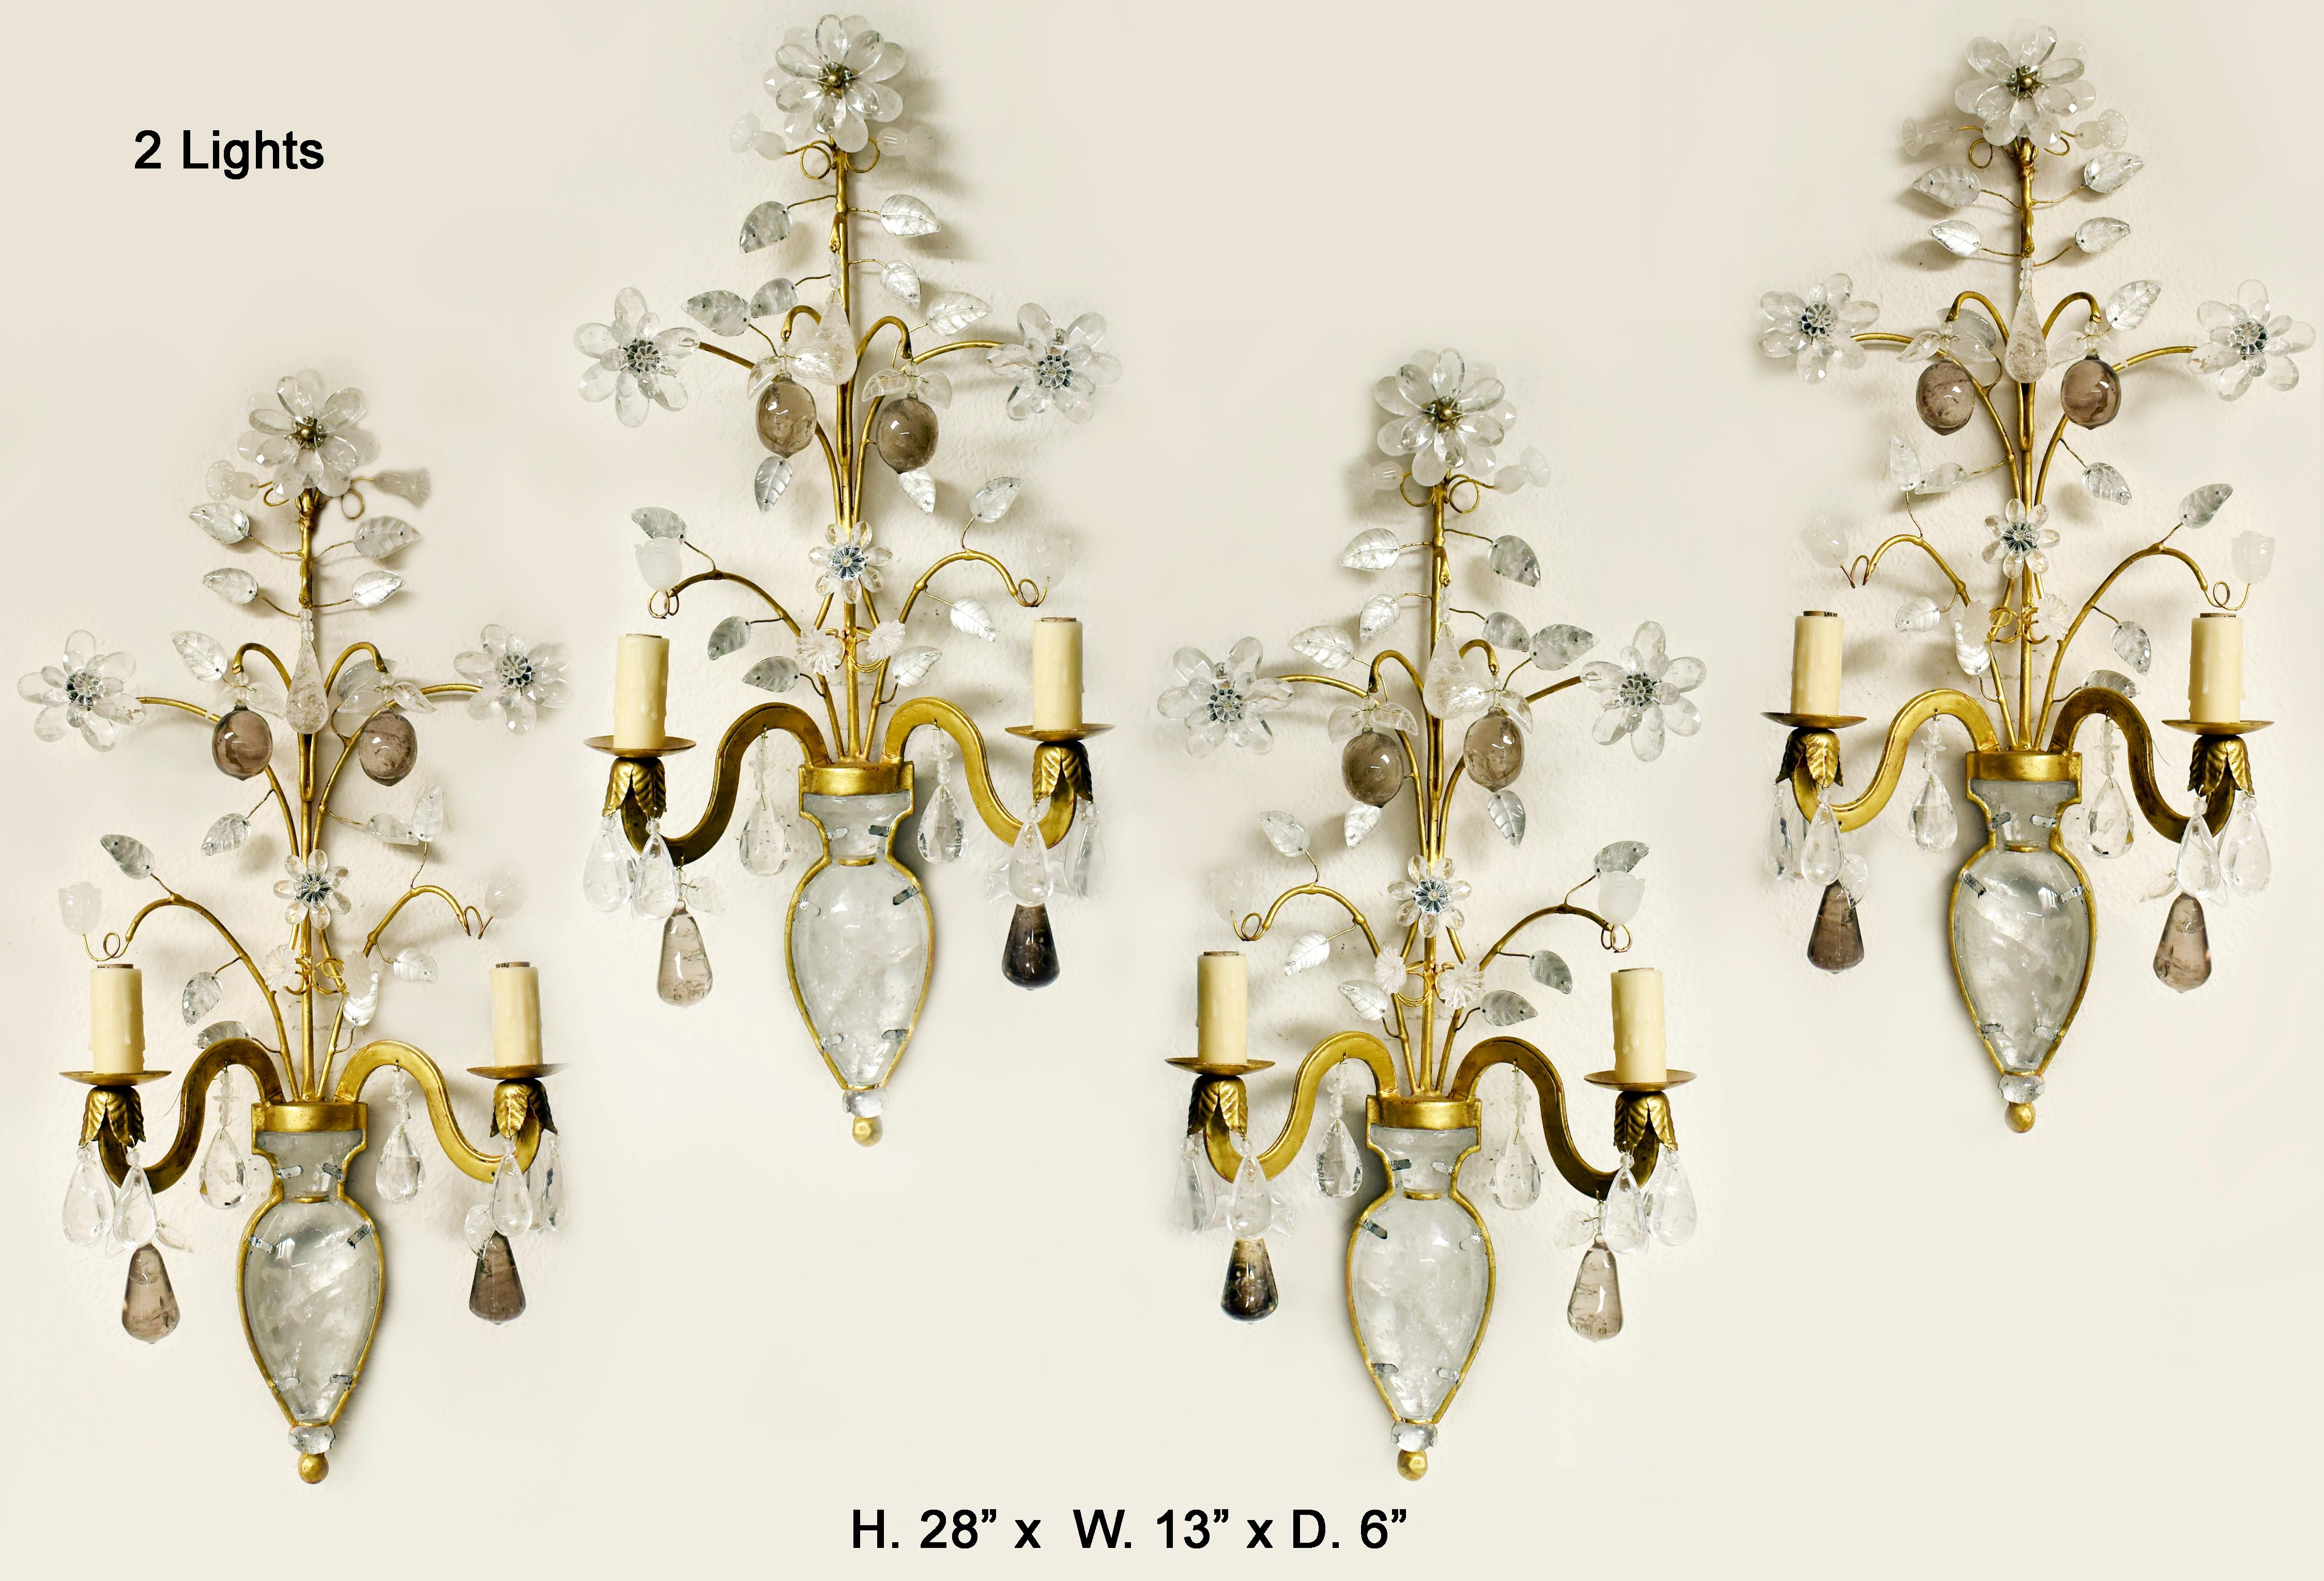 Exquisiter Satz von vier Bergkristall-Wandleuchtern im französischen Bagues-Stil mit 22-karätiger Blattvergoldung.
21. Jahrhundert. (X)
Jede Leuchte ist mit einem glatten Bergkristall halbe Vase in eine vergoldete Rückplatte zentriert, die